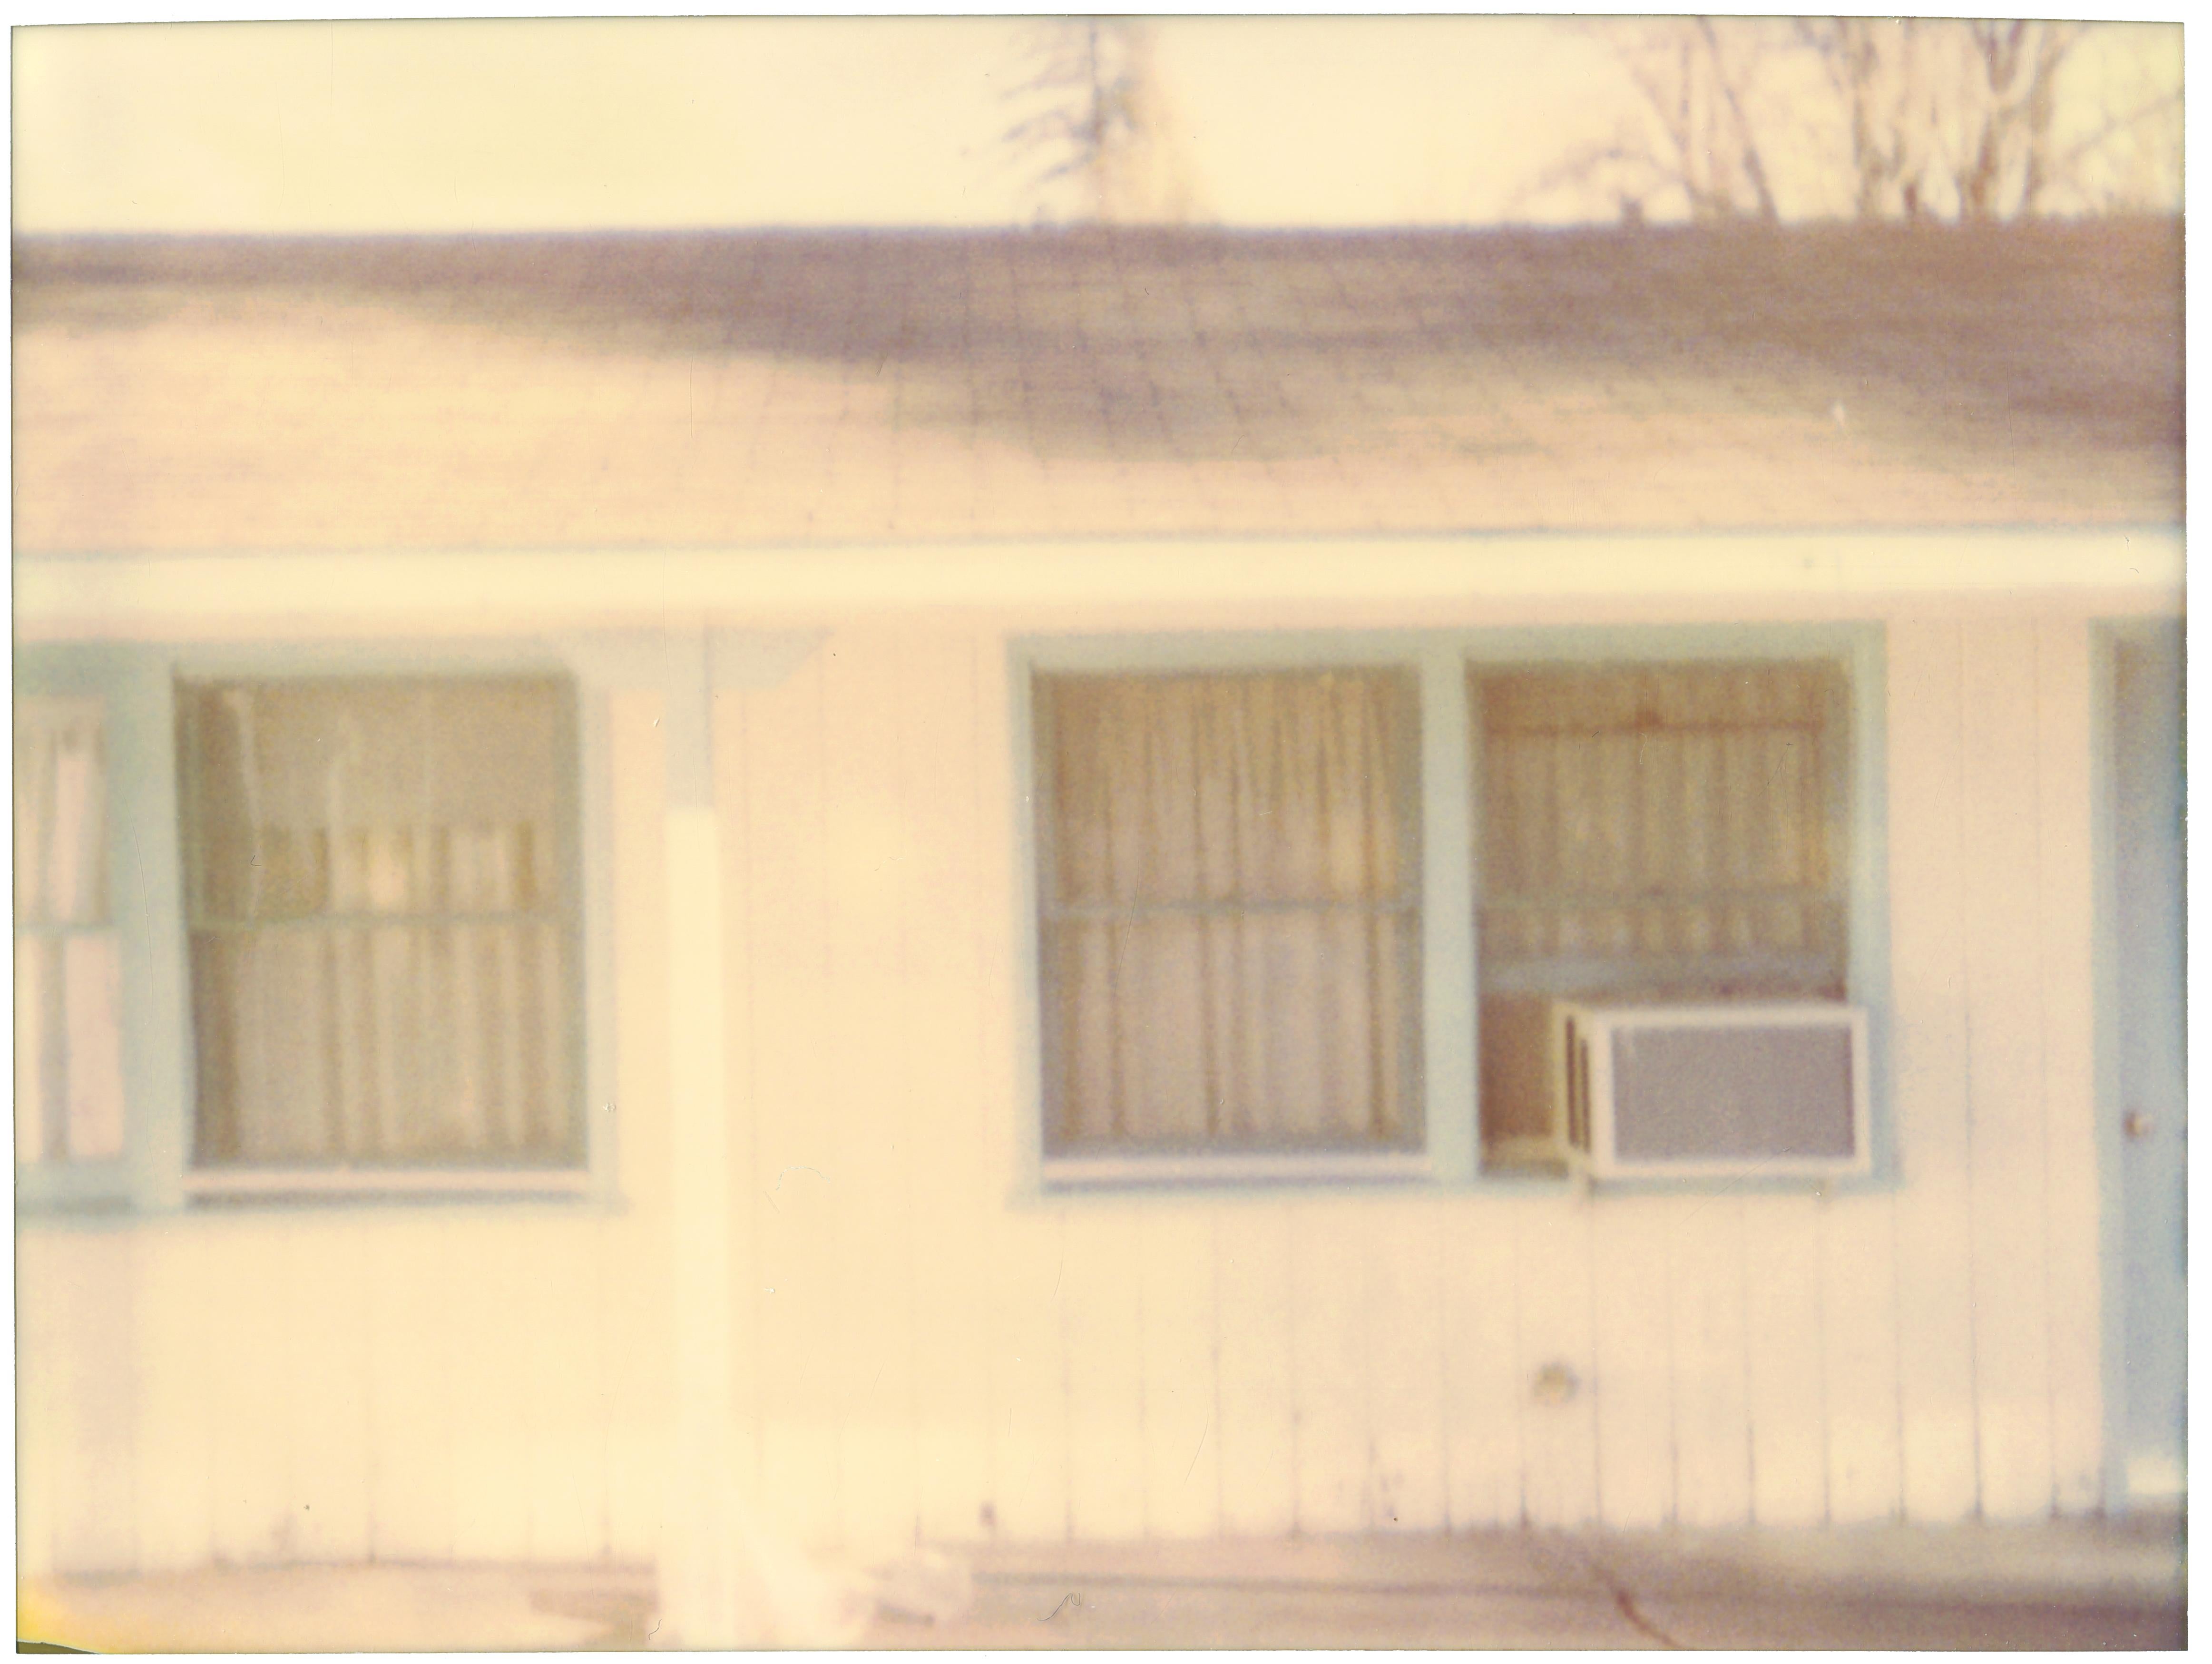 Lone Pine Motel I (Die letzte Bilderausstellung) 60x80cm, analog, handgedruckt, montiert